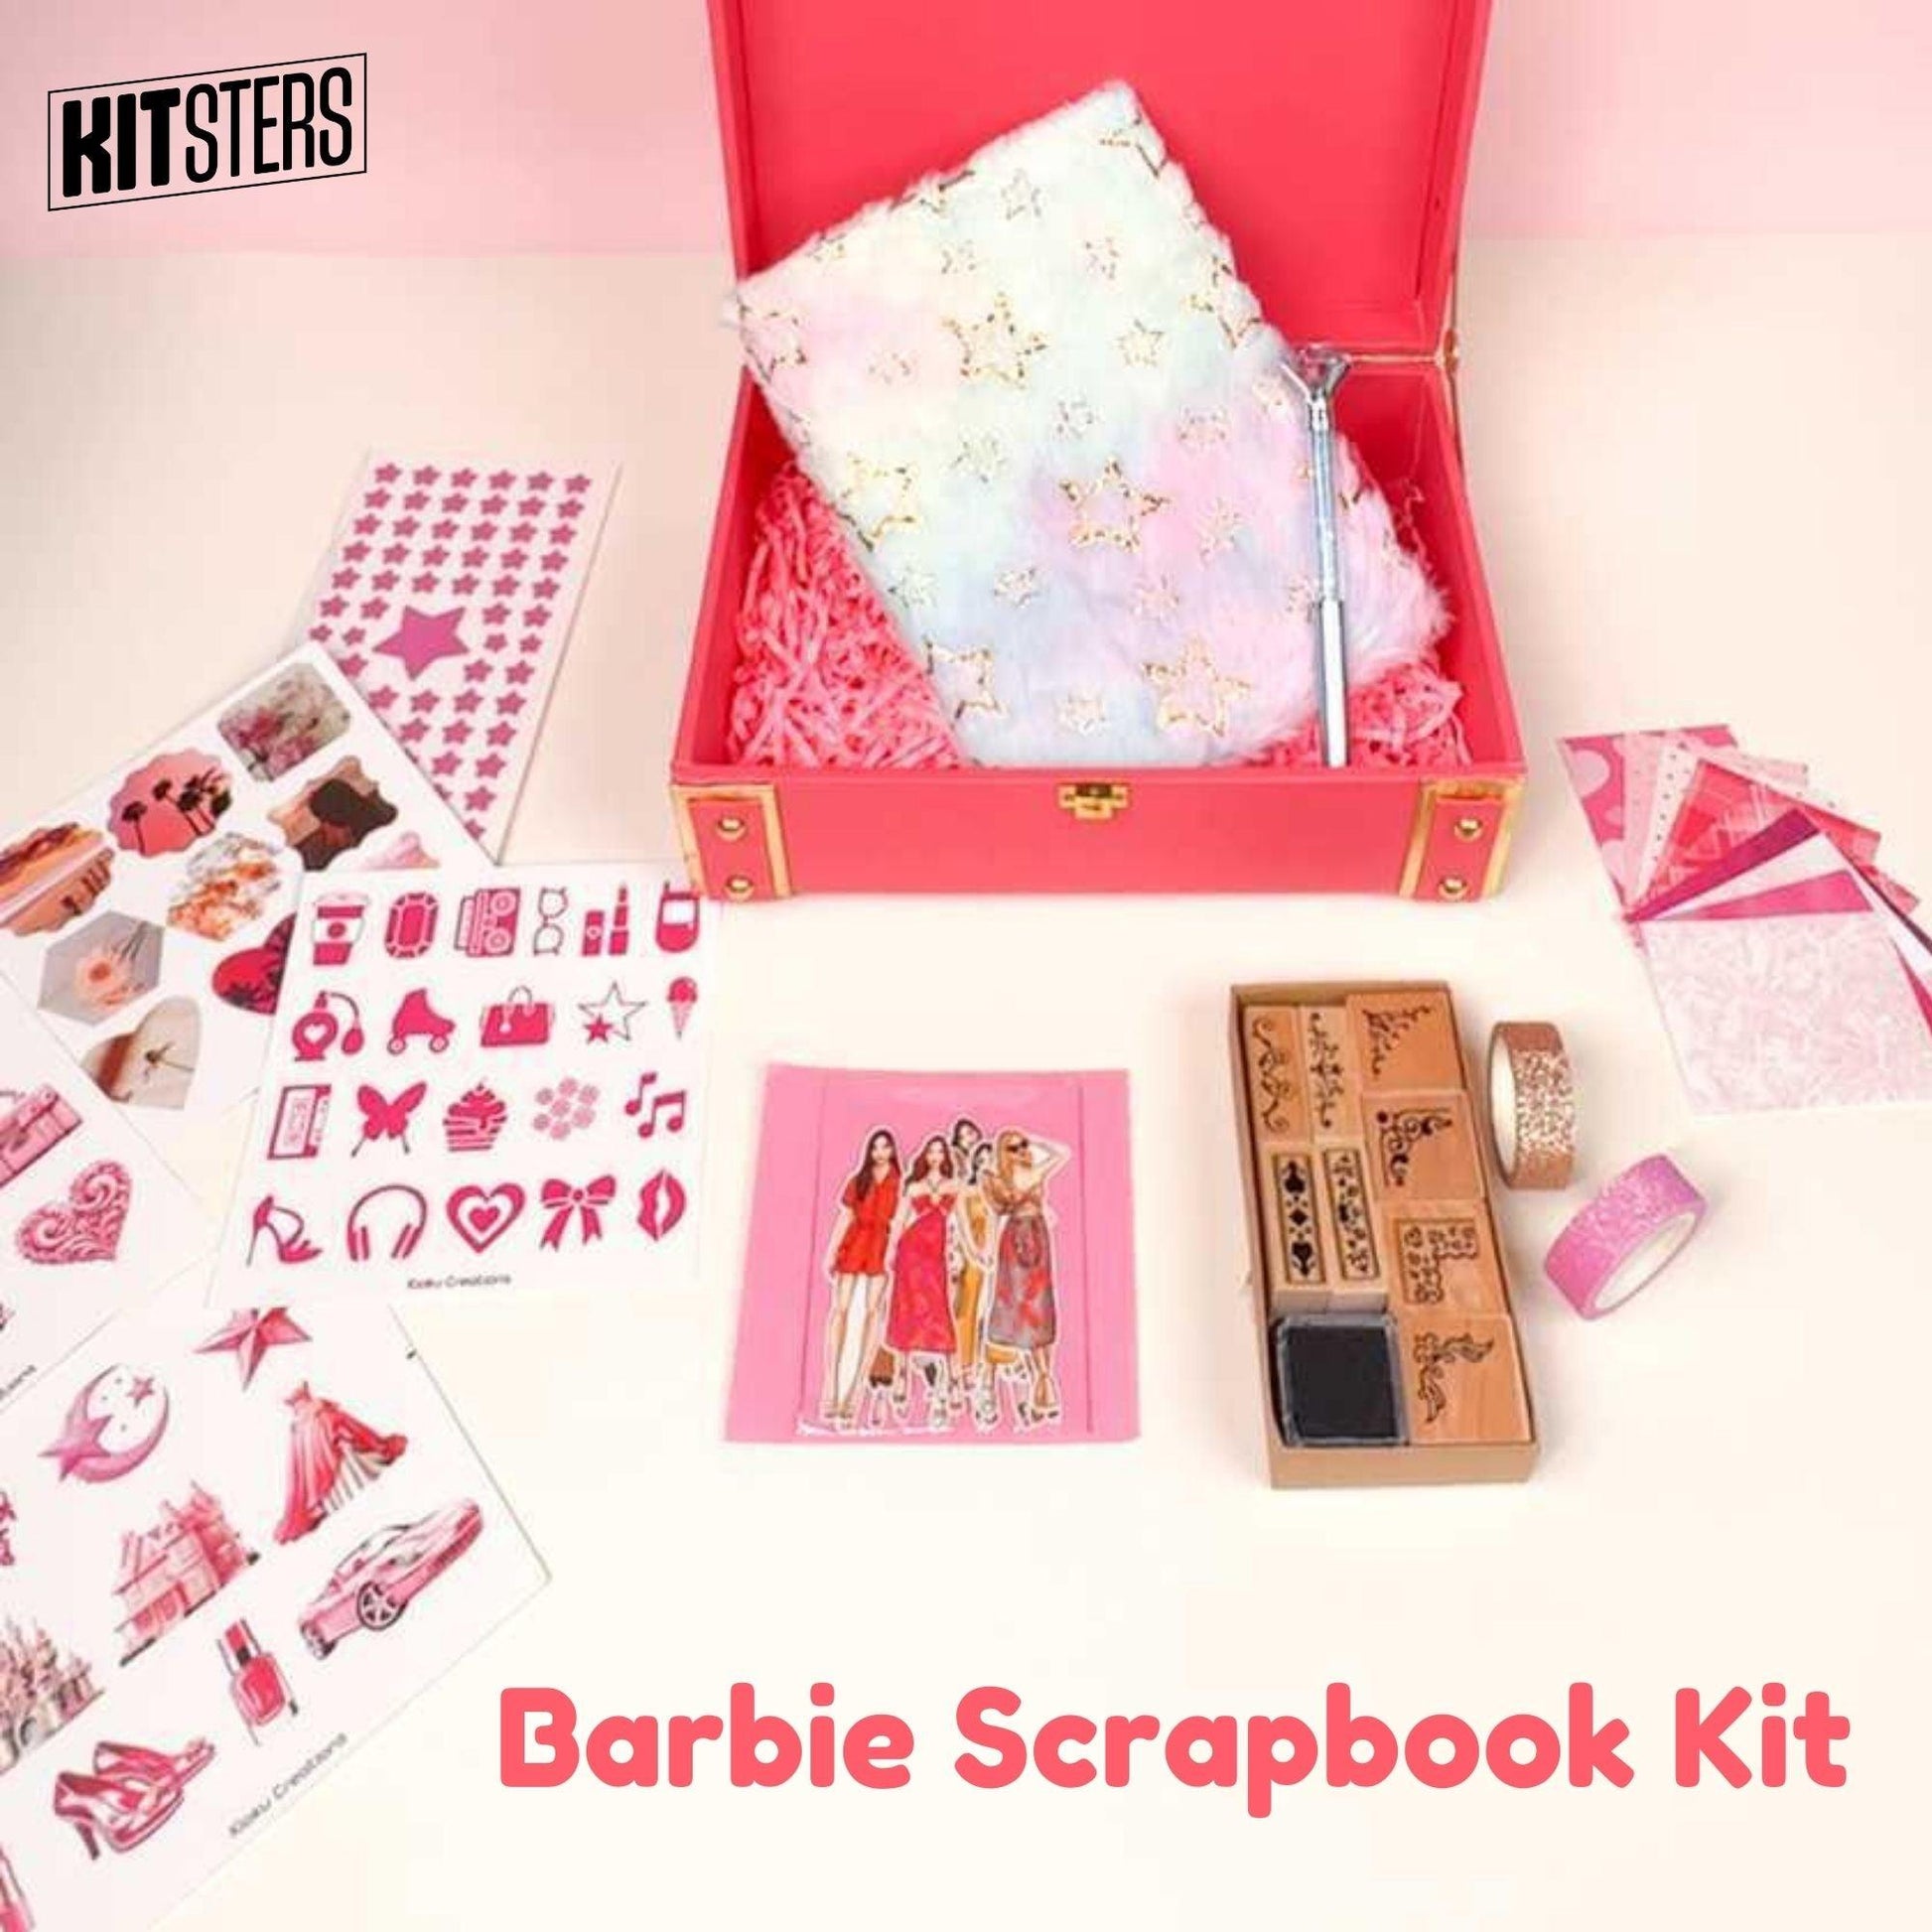 DIY Barbie Scrapbook Kit